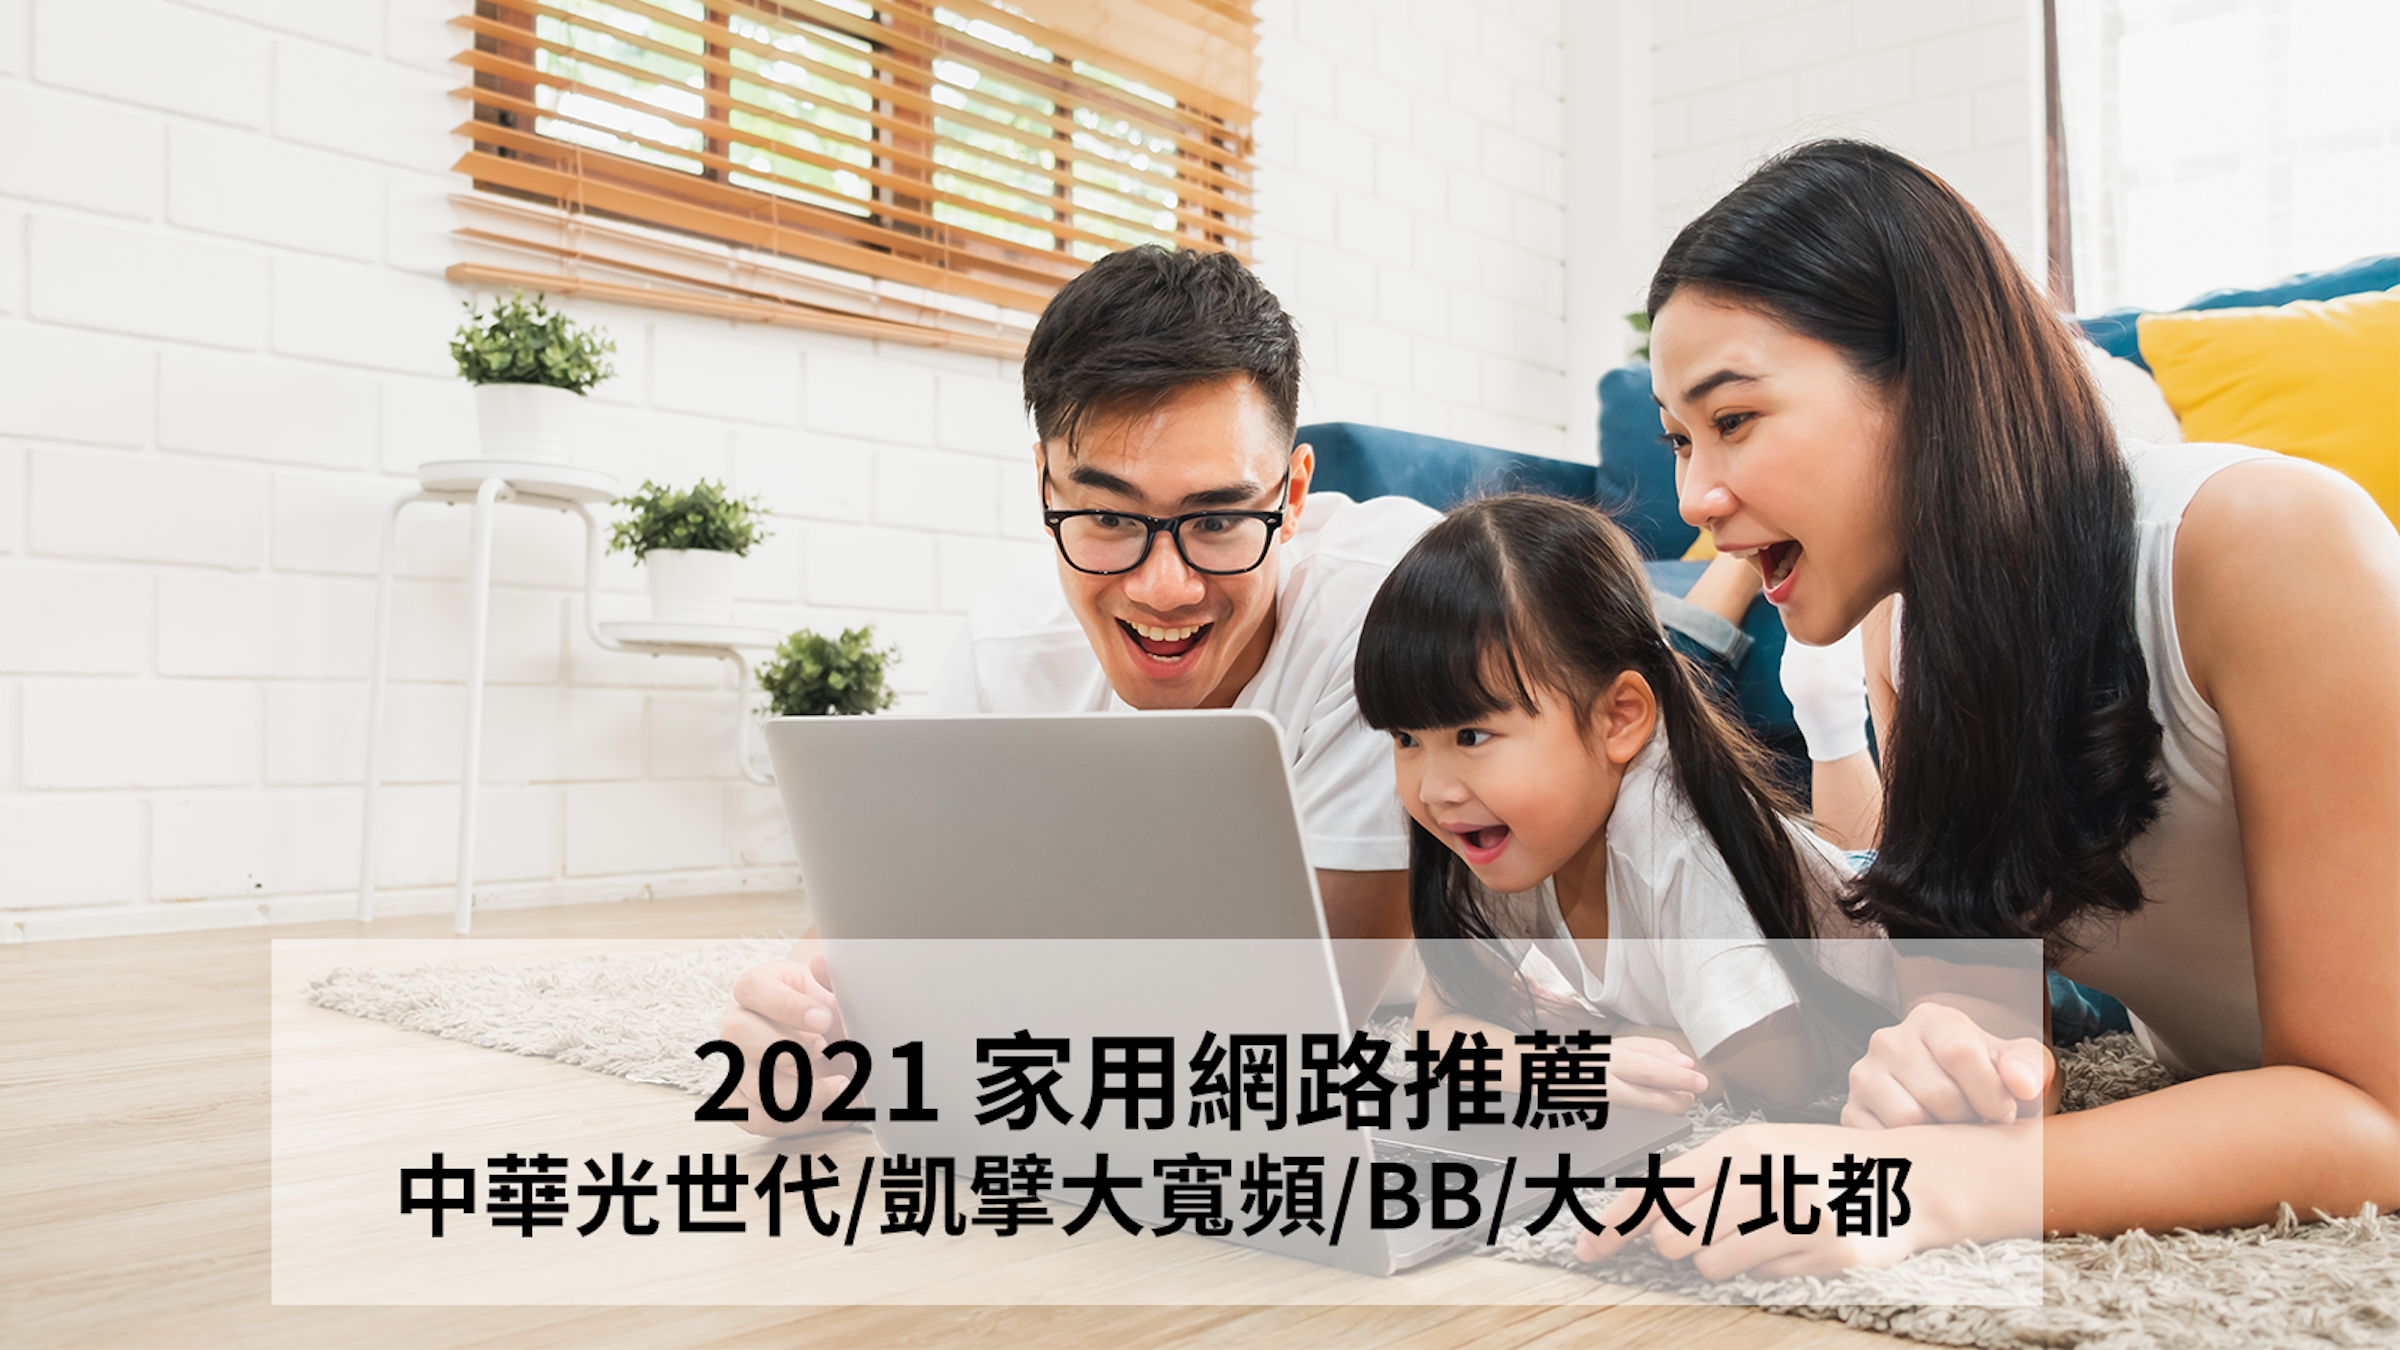 照片中提到了2021 家用網路推薦、中華光世代/凱擎大寬頻/BB/大大/北都，包含了筆記本電腦、筆記本電腦、電腦、互聯網、家庭